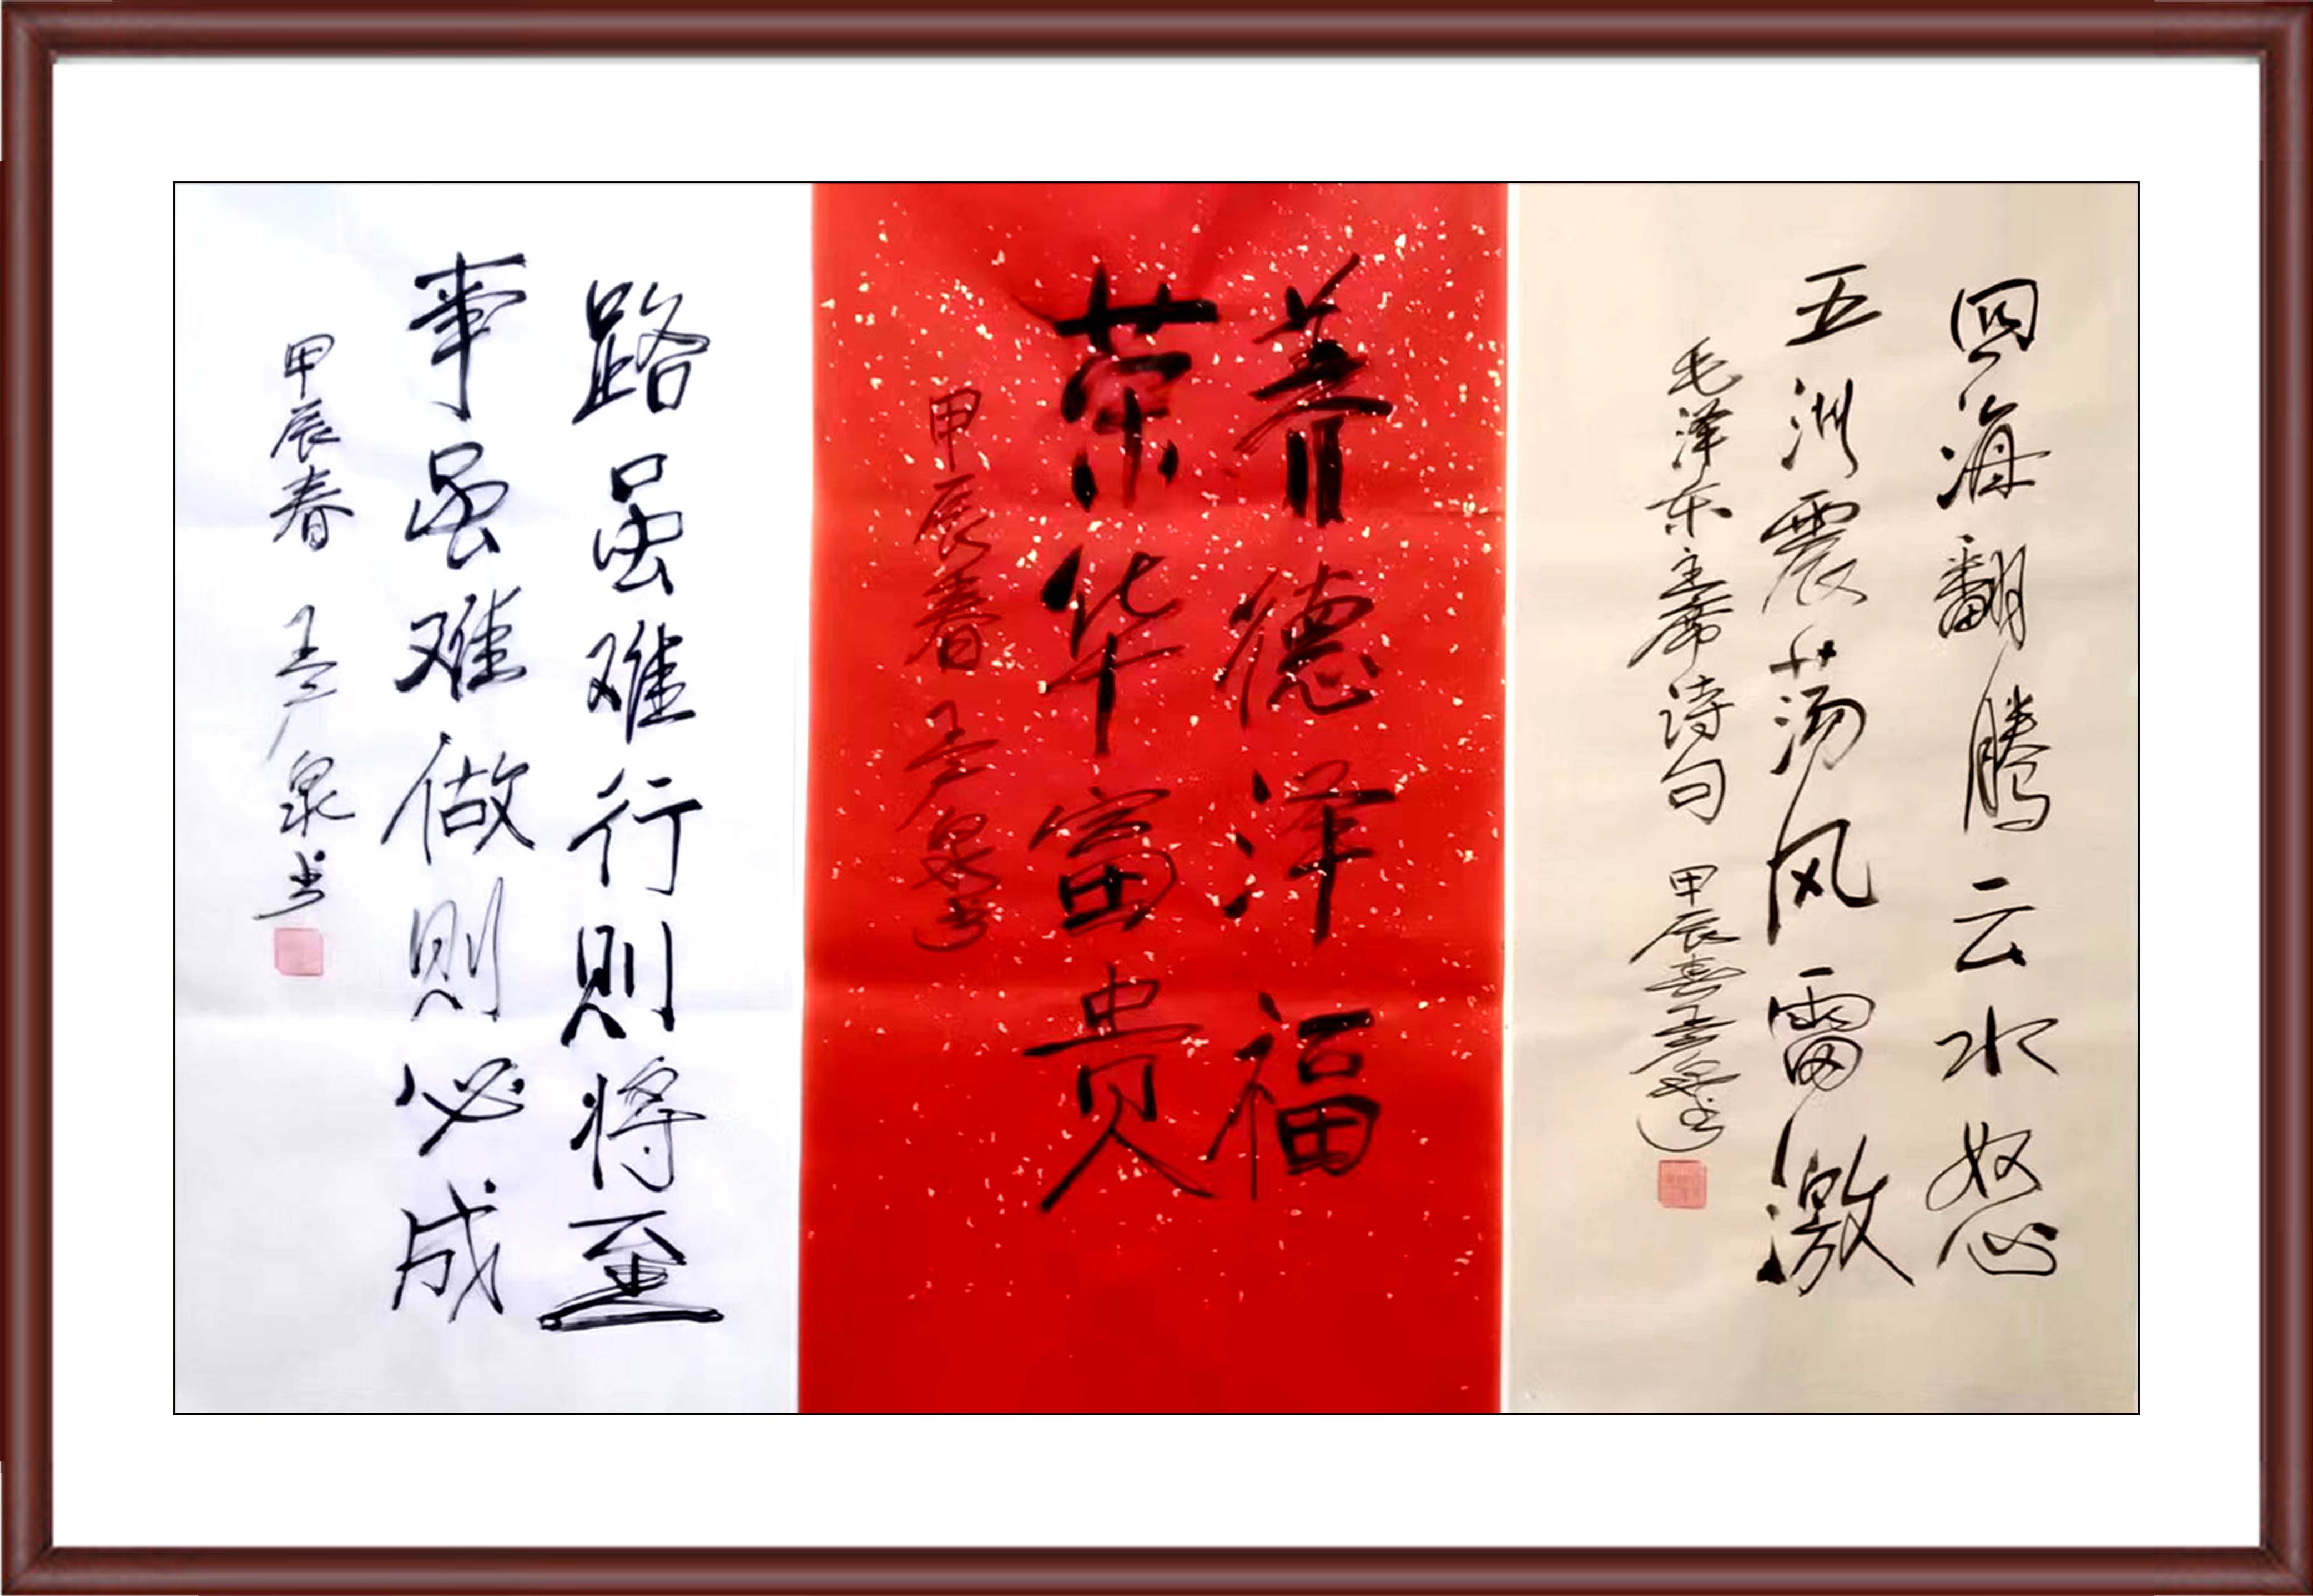 天地同和，翰墨迎新——中国艺术收藏 特别推荐艺术家王广泉作品展示